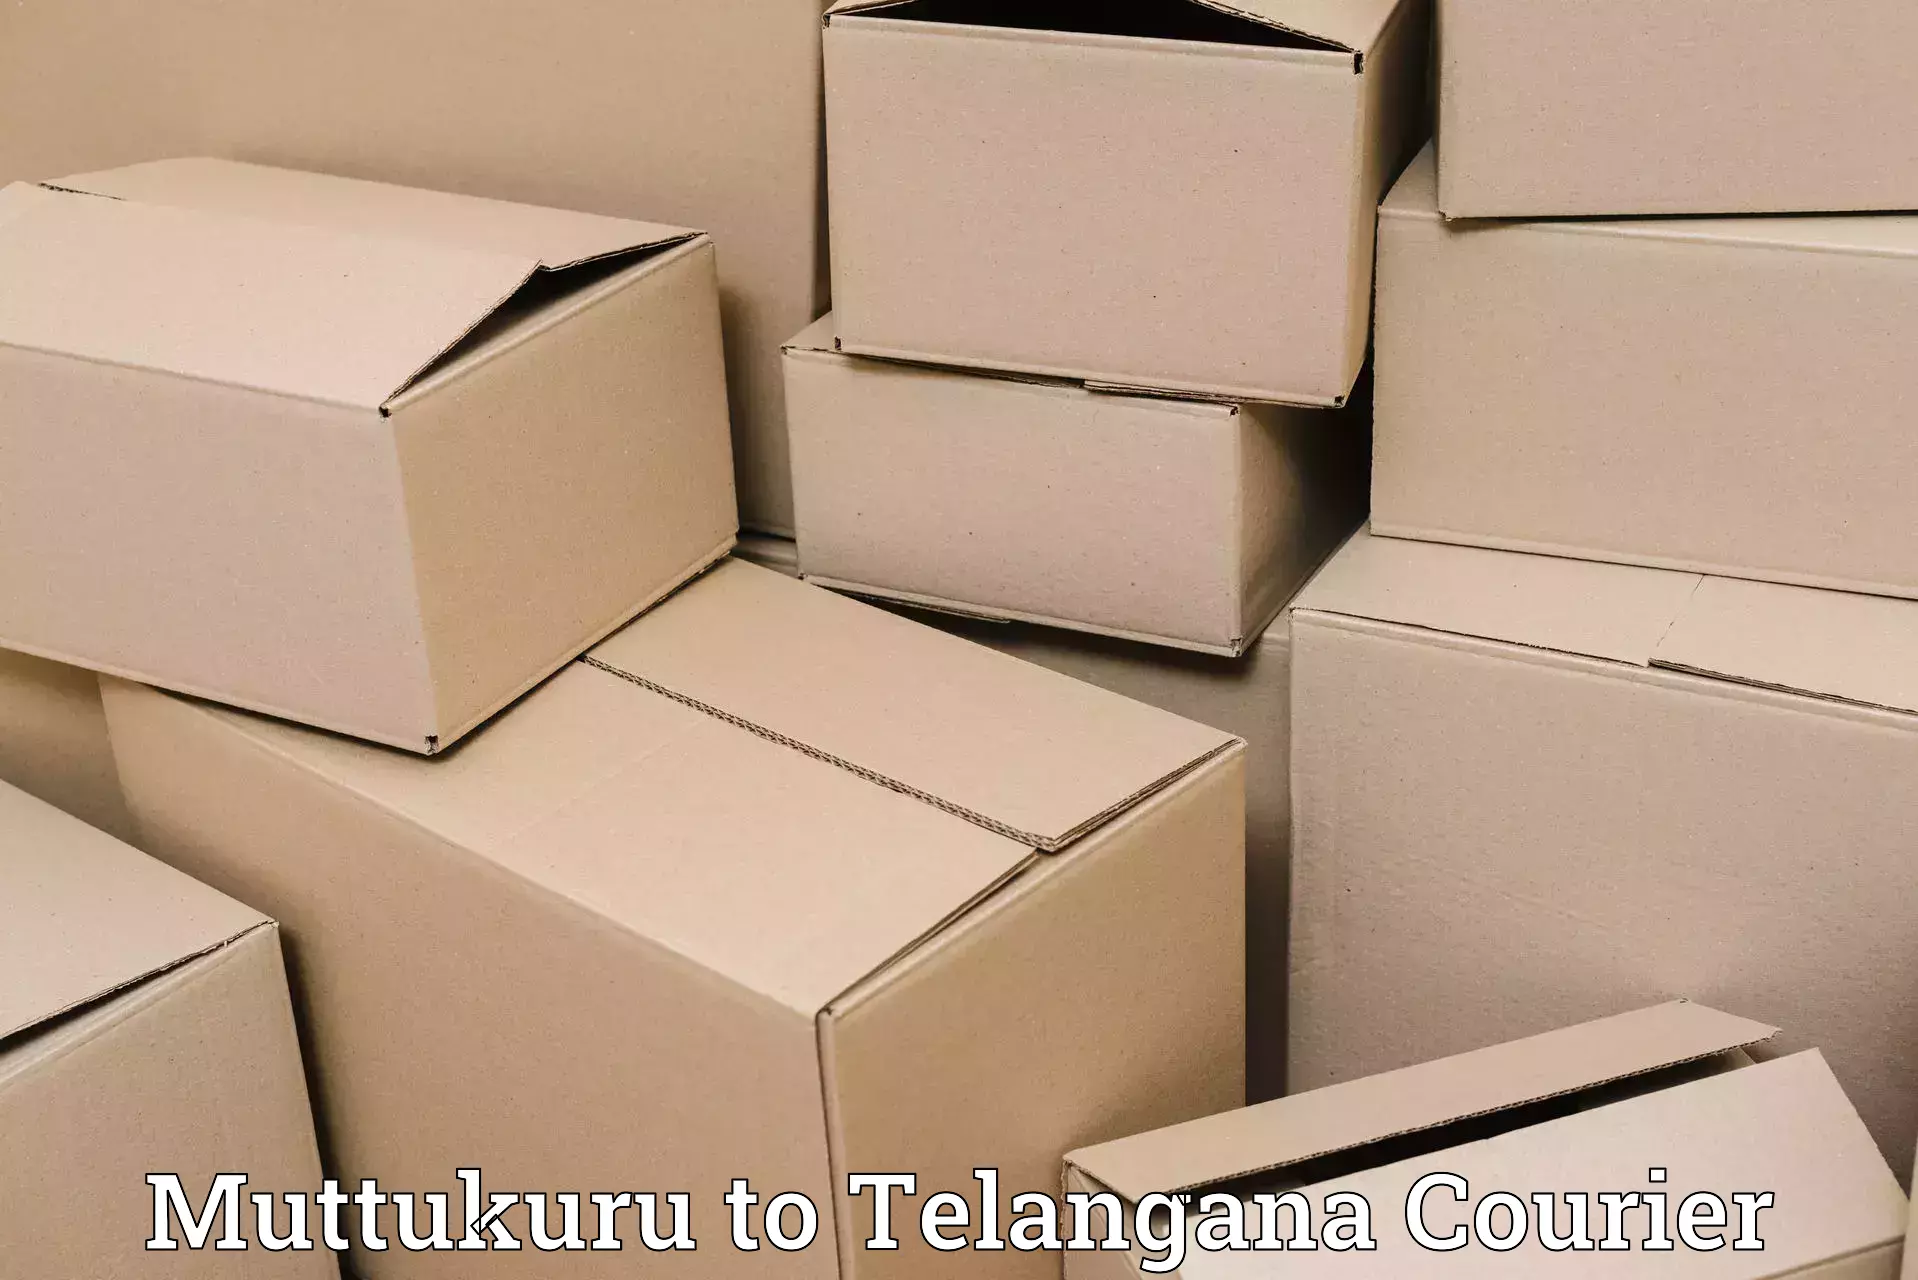 24/7 courier service Muttukuru to Parkal